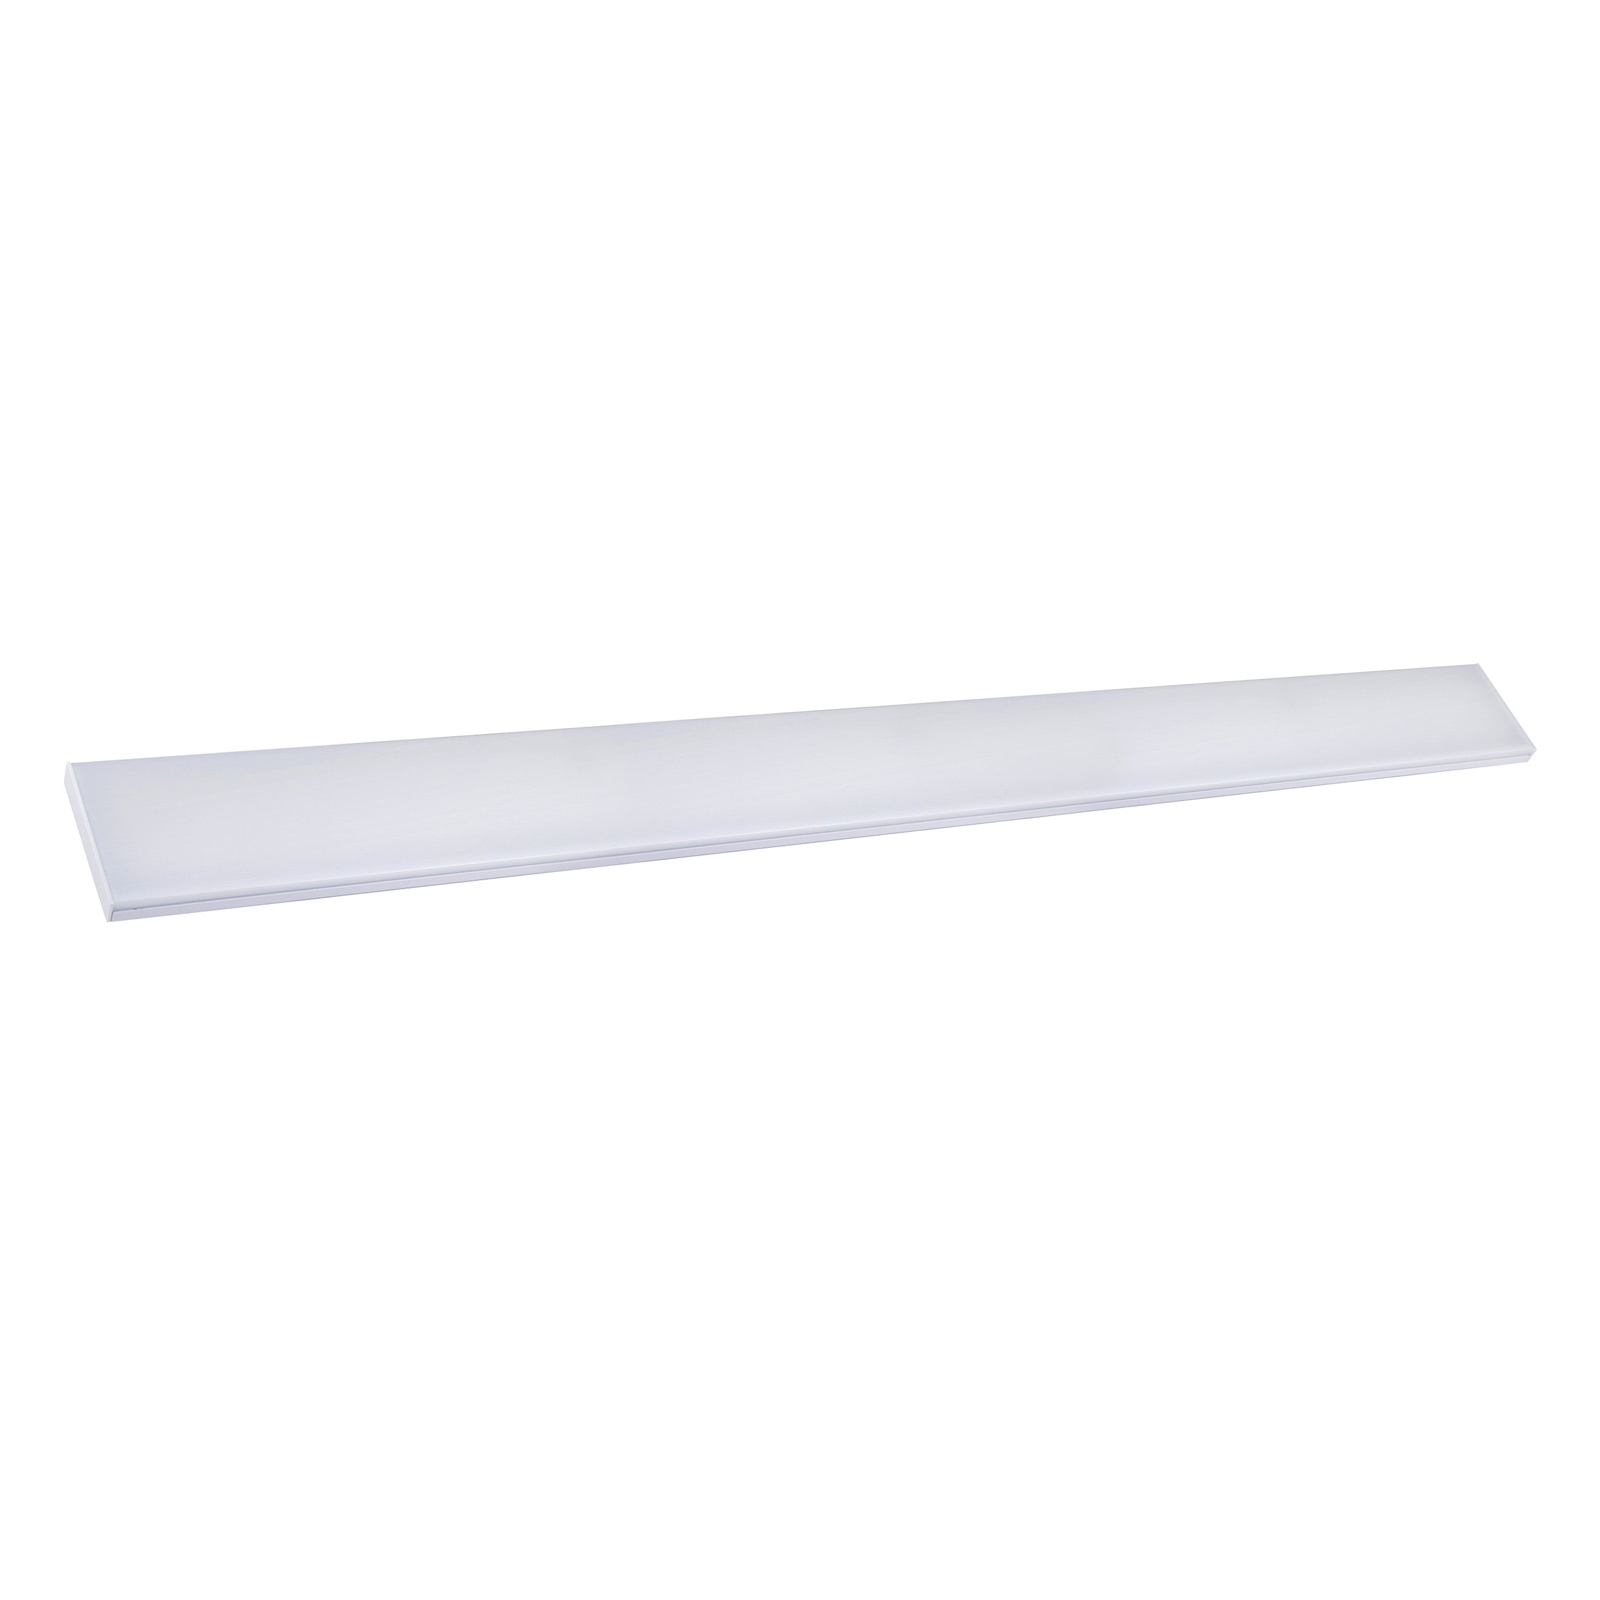 Φωτιστικό οροφής LED Planus 120 universal λευκό